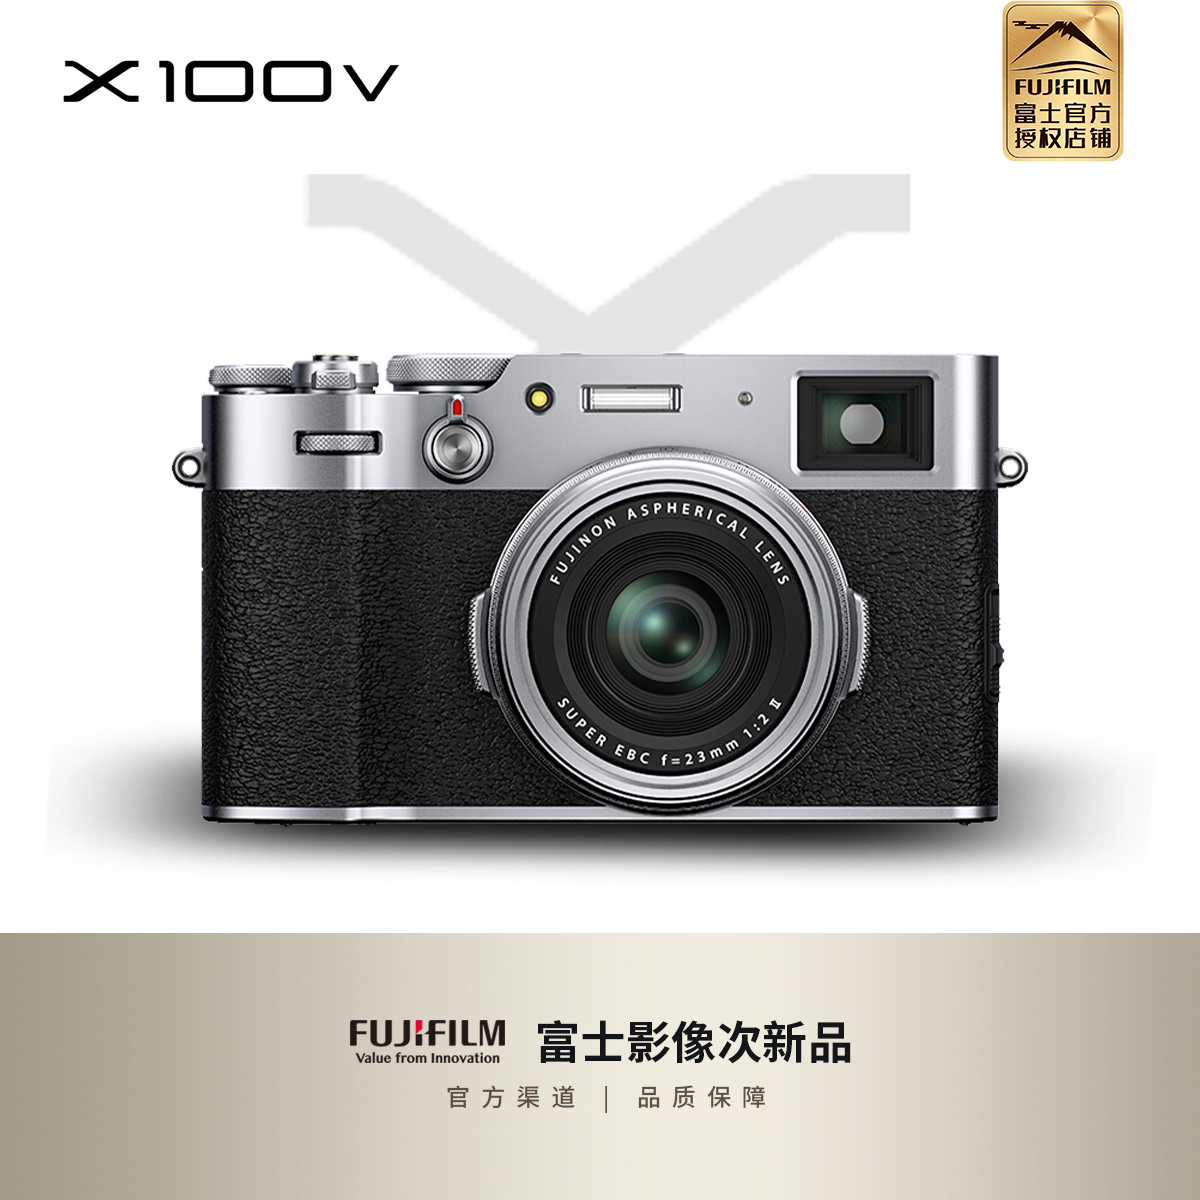 【次新品】富士 X100V x100v 旁轴数码相机 APS-C画幅街拍相机